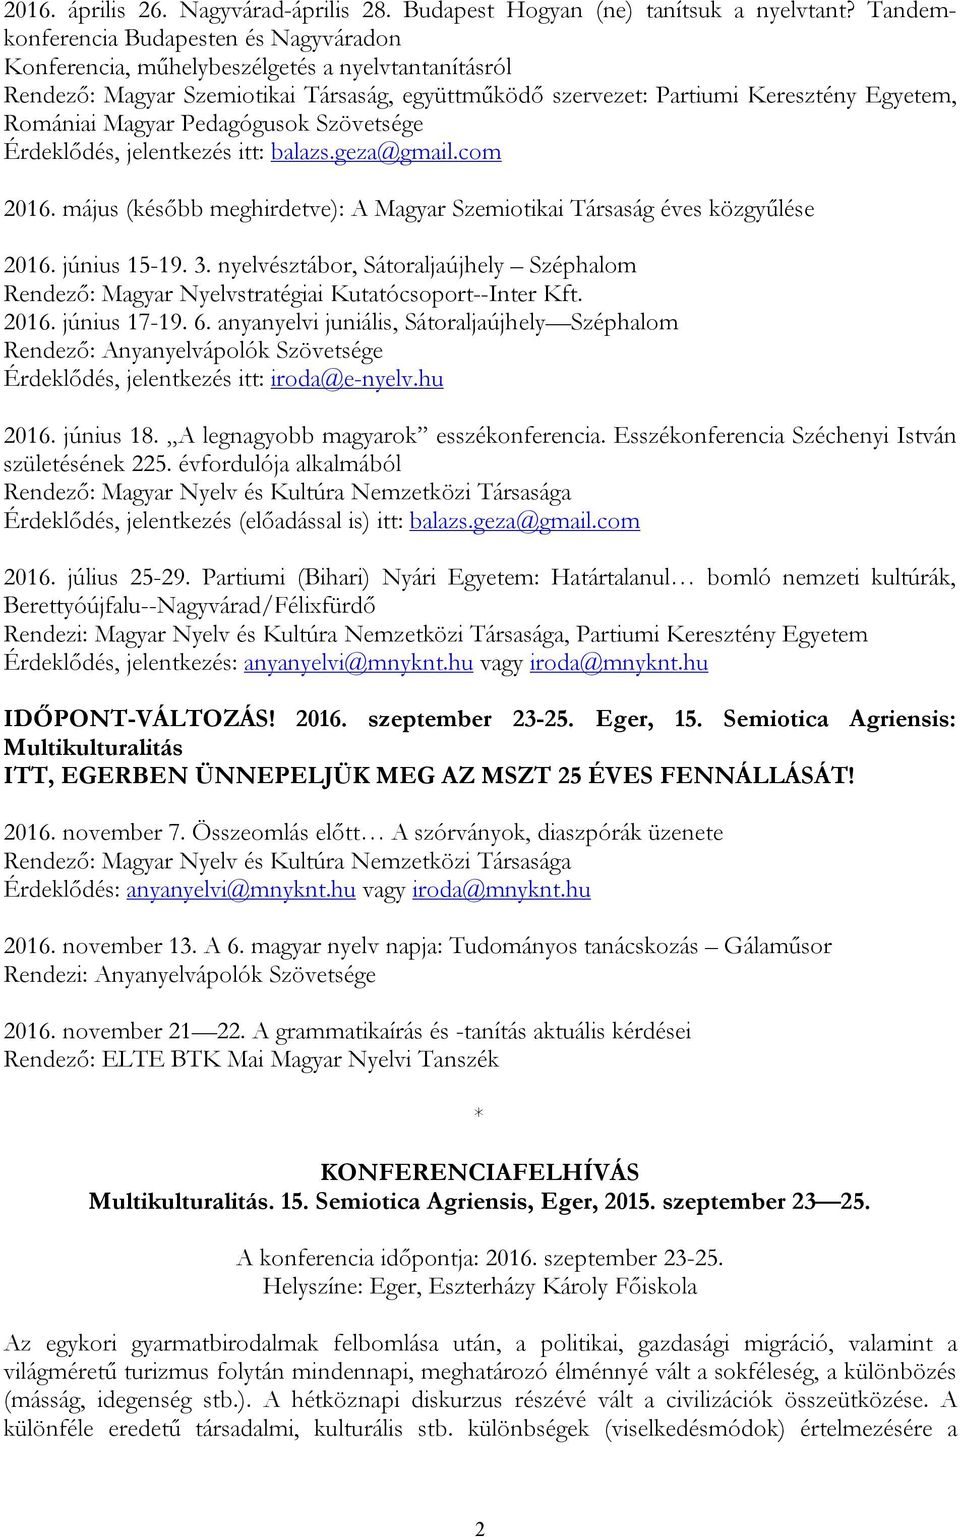 Magyar Pedagógusok Szövetsége Érdeklődés, jelentkezés itt: balazs.geza@gmail.com 2016. május (később meghirdetve): A Magyar Szemiotikai Társaság éves közgyűlése 2016. június 15-19. 3.